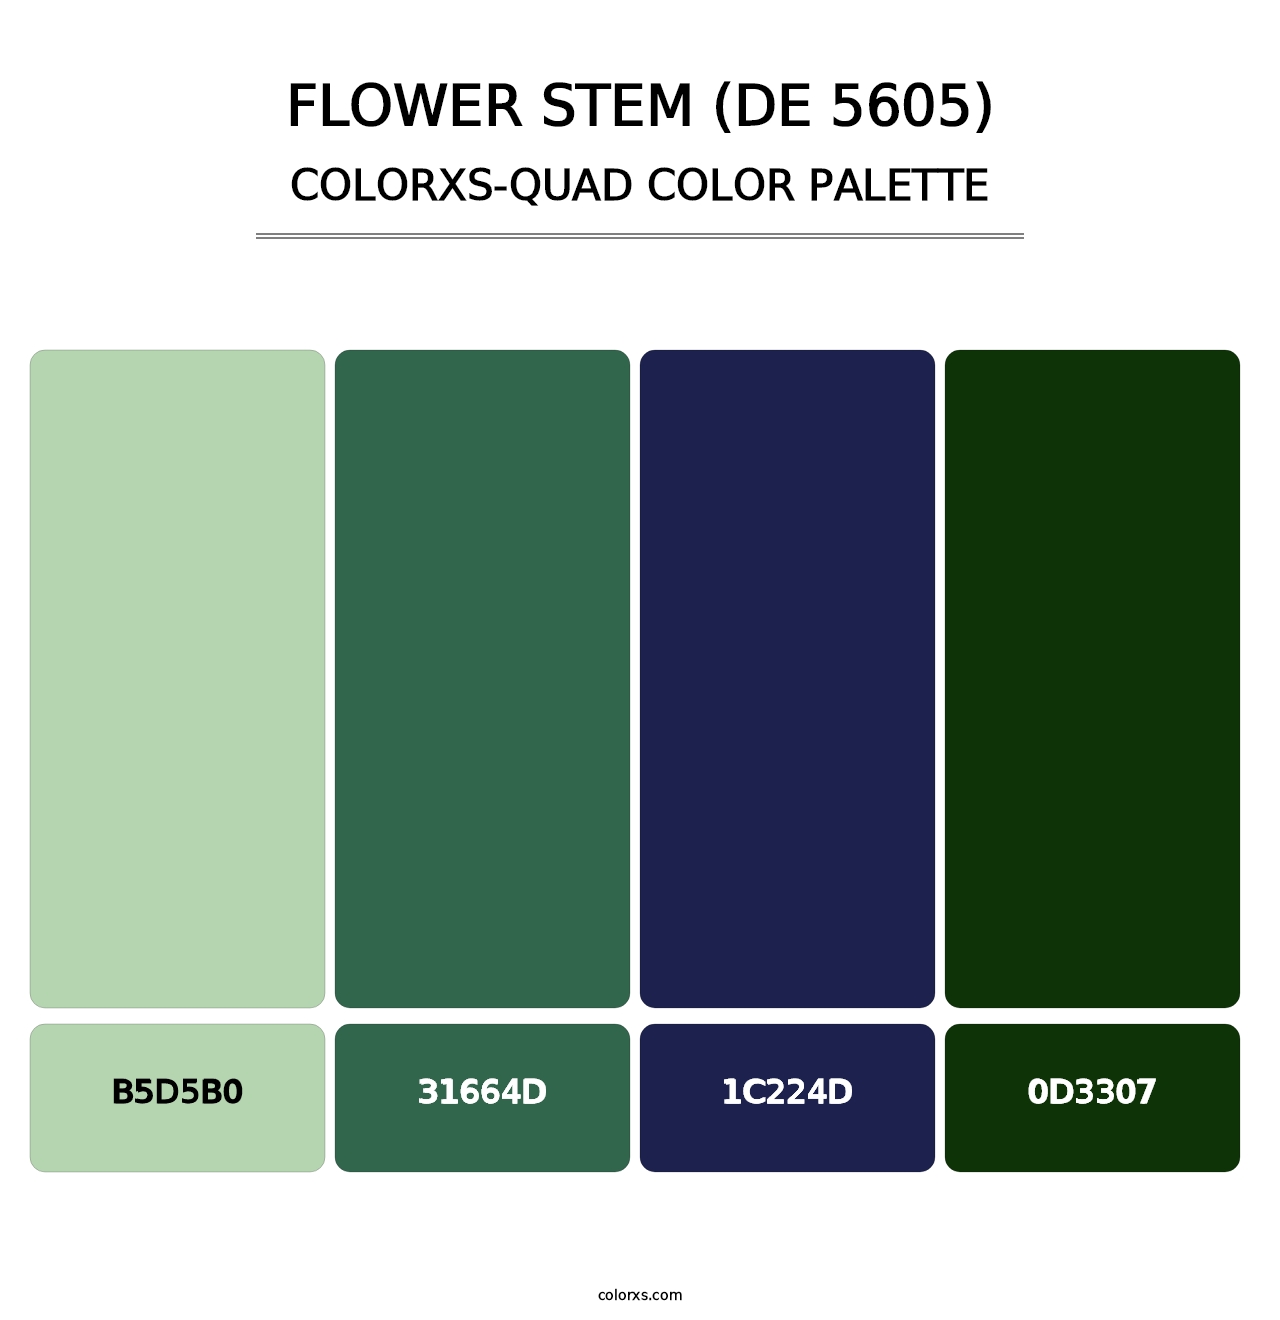 Flower Stem (DE 5605) - Colorxs Quad Palette